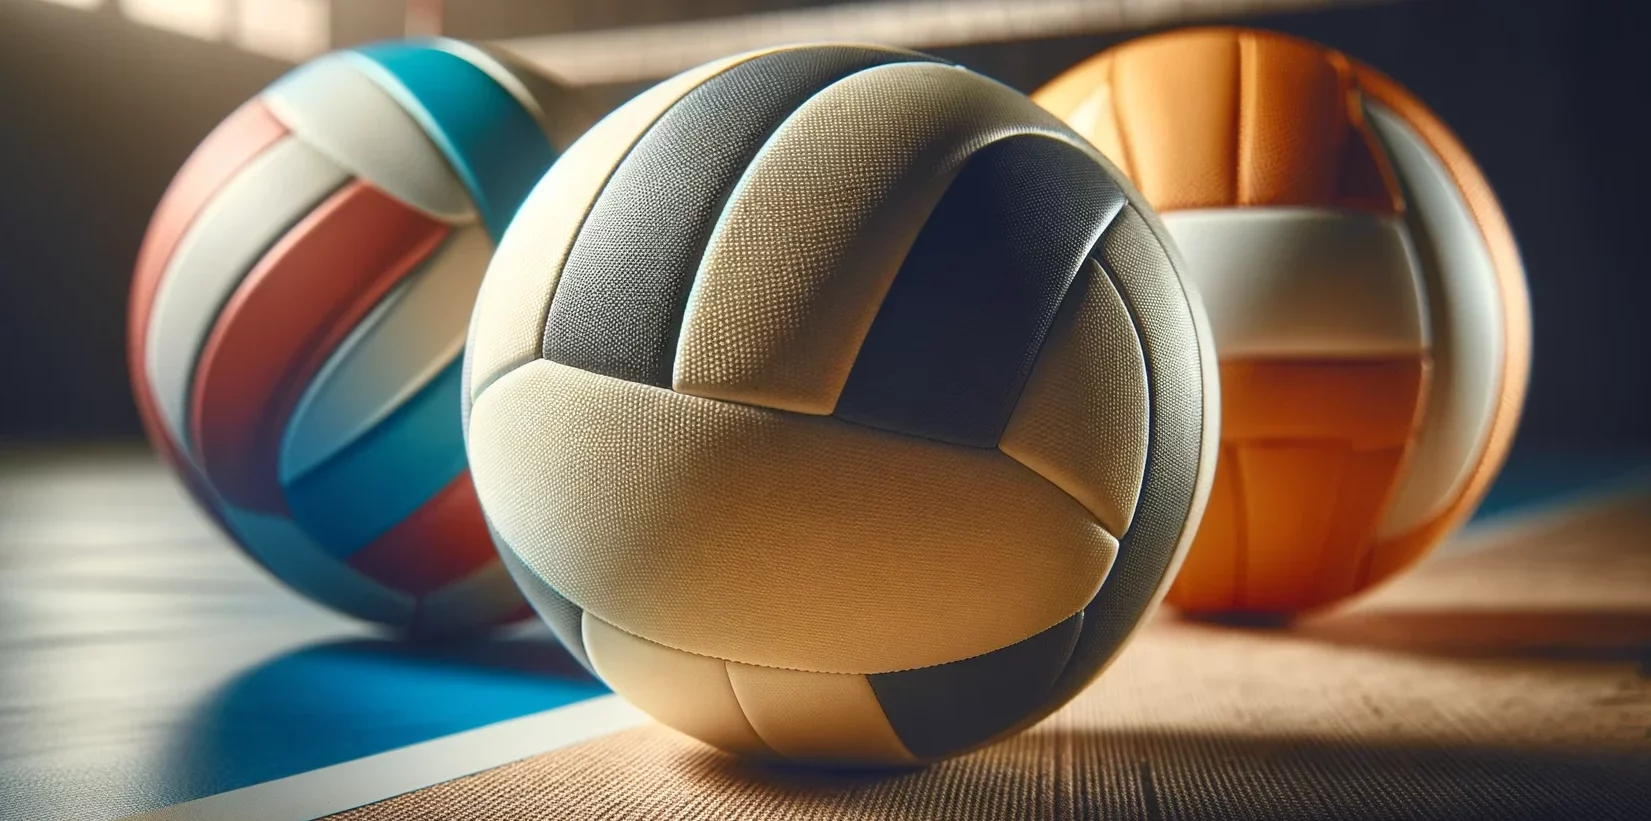 Foto einer Nahaufnahme von verschiedenen Volleybällen, die ihre unterschiedlichen Texturen, Größen und Materialien zeigen.